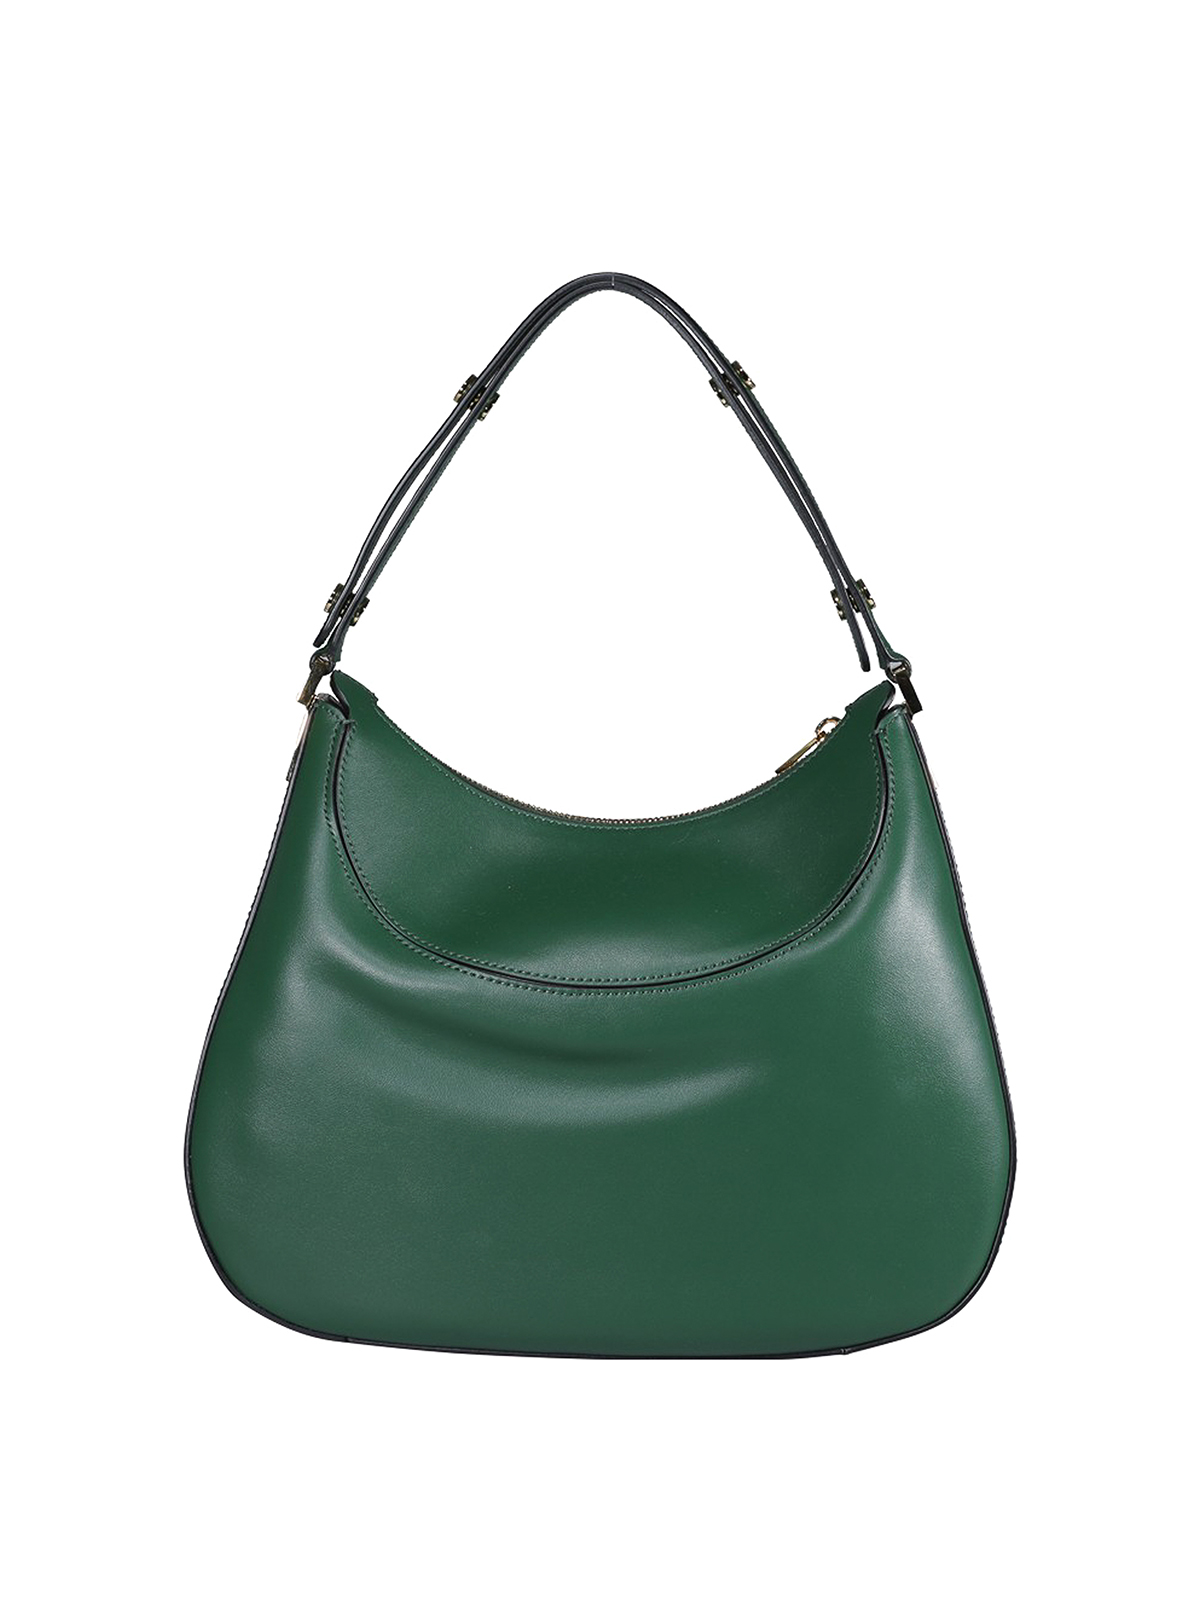 COACH Nomad Leather Shoulder Bag in Green